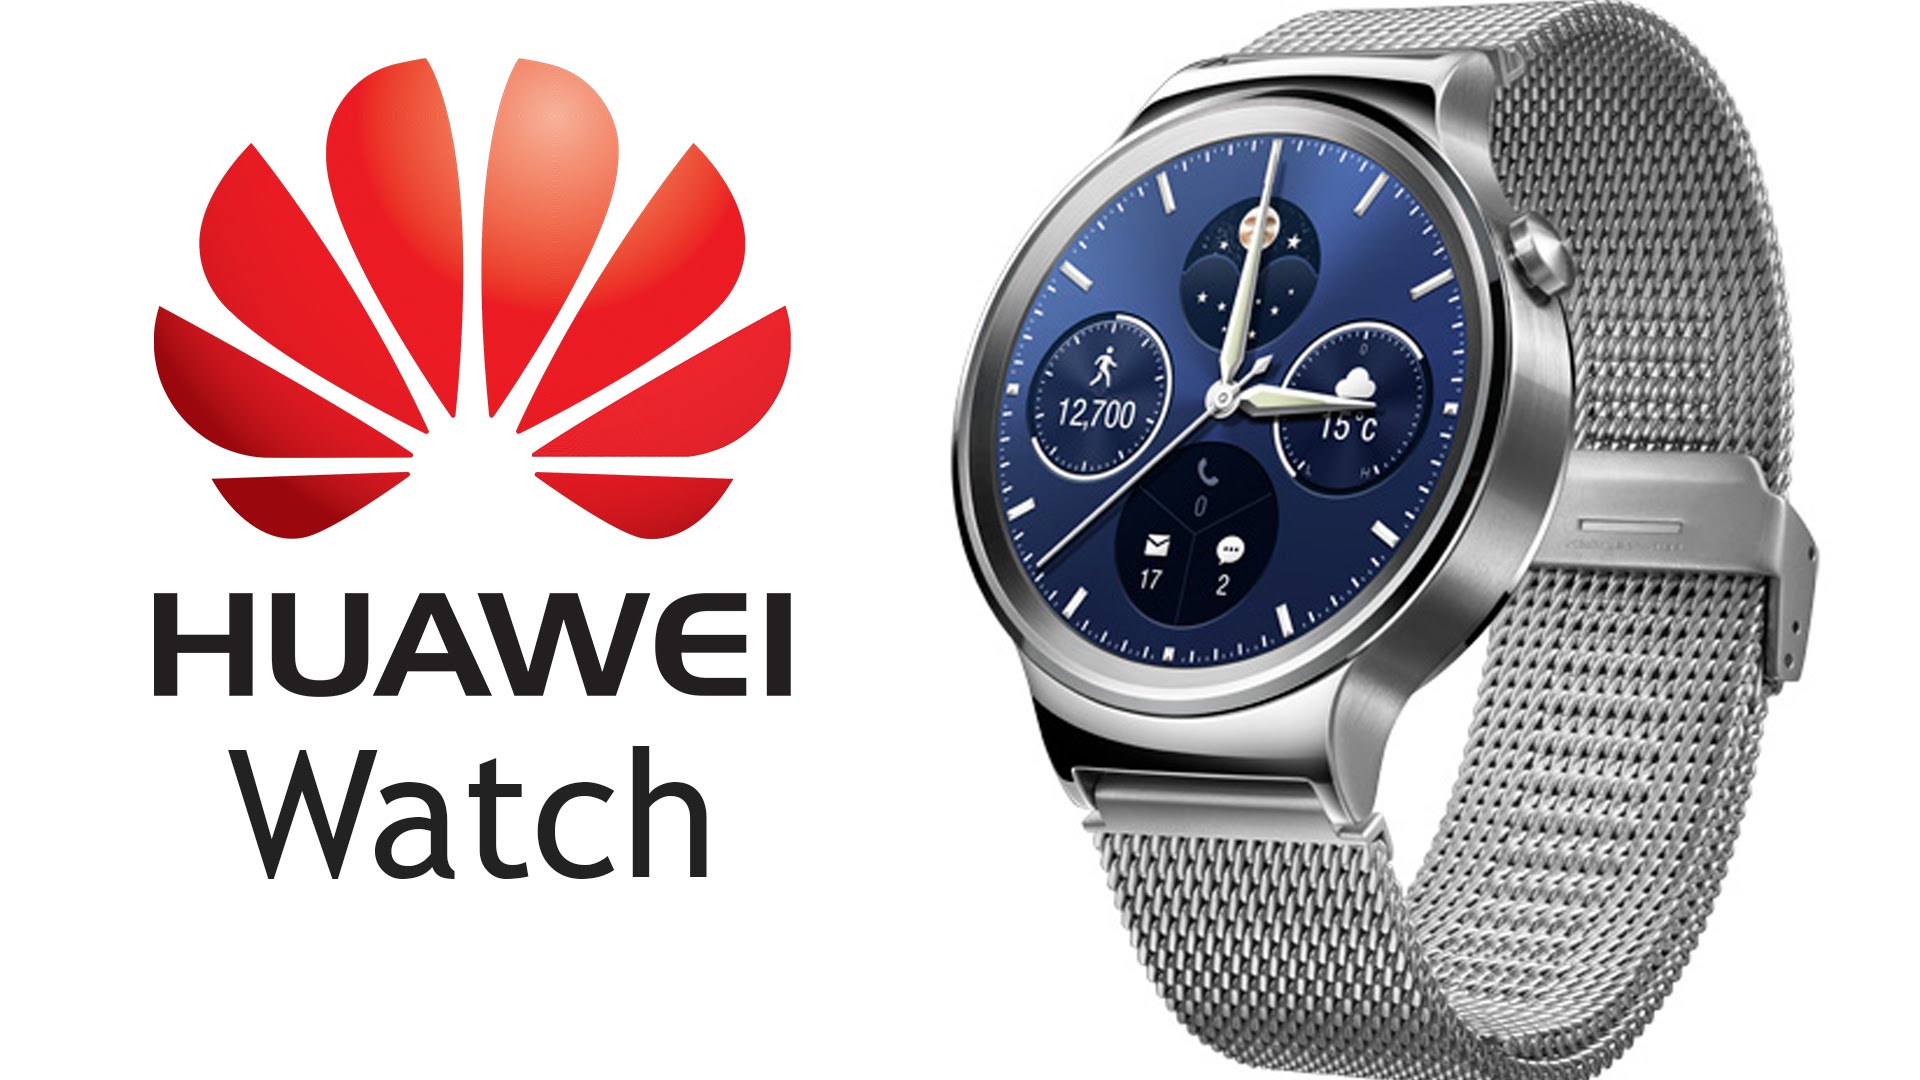 มาแน่ !! CEO Huawei ยืนยัน เตรียมเปิดตัว Huawei Watch 2 ที่งาน MWC ปลายเดือนกุมภาพันธ์ !!